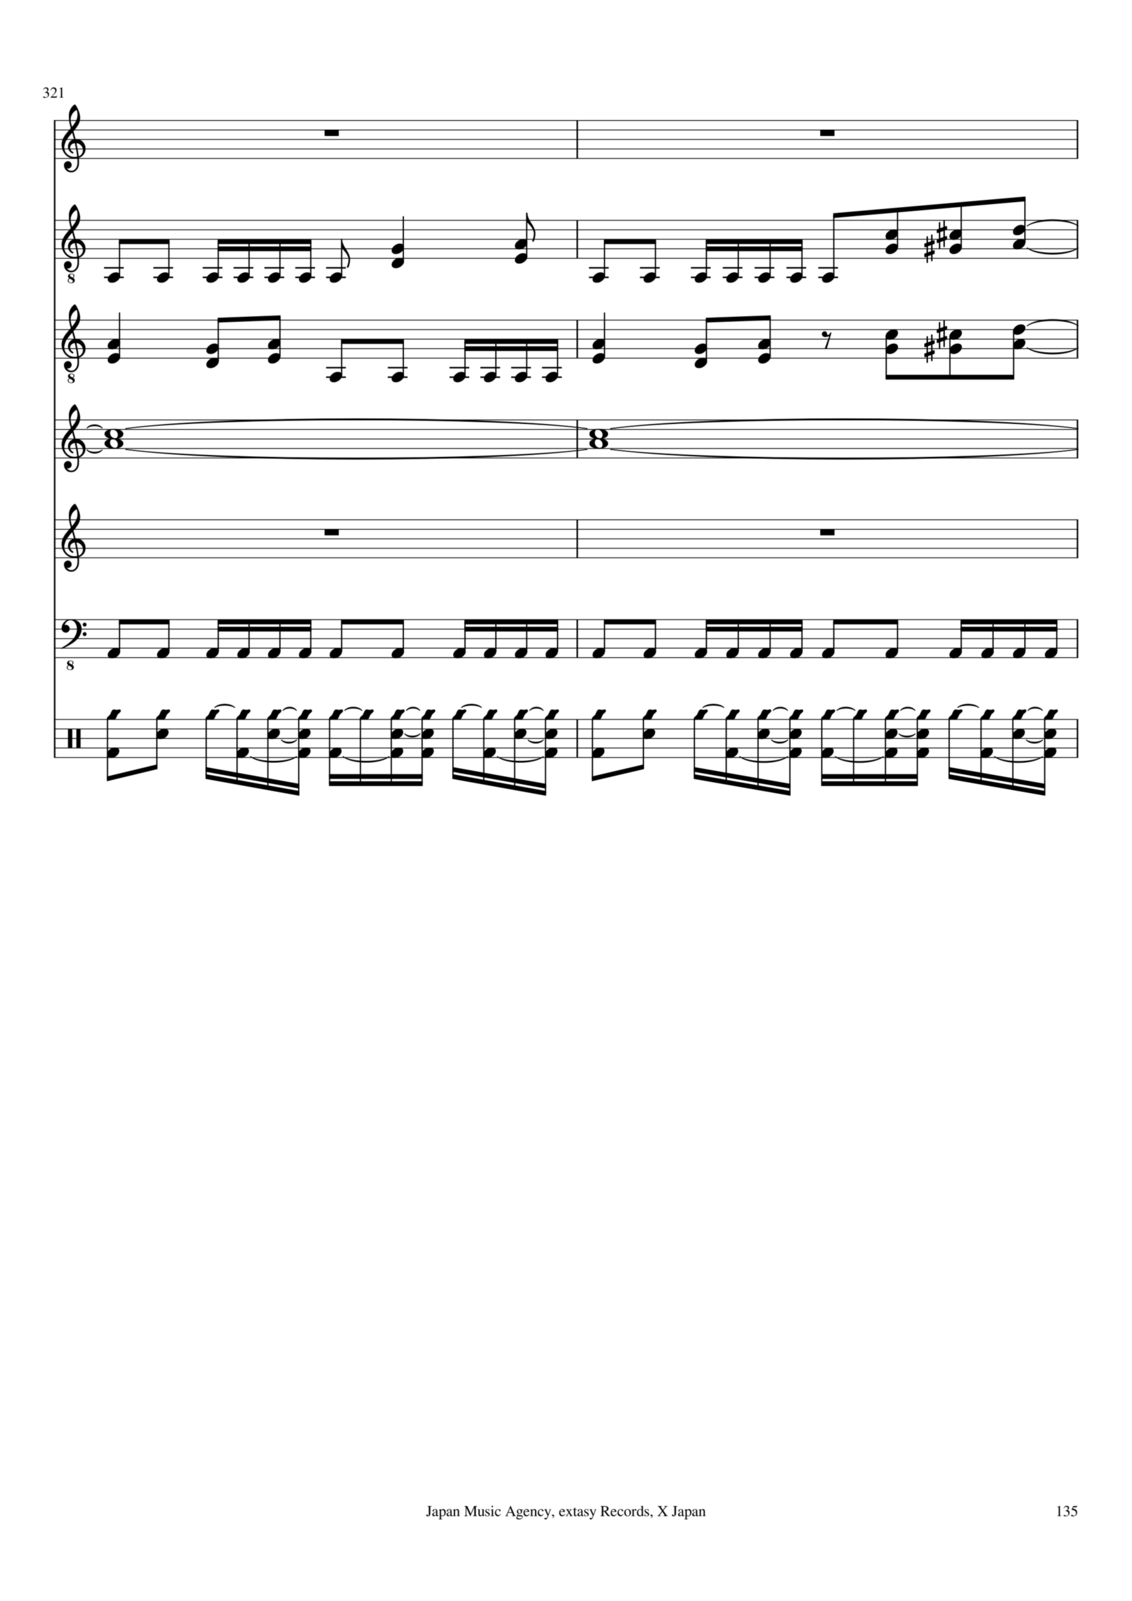 Utro polinyi slide, Image 106